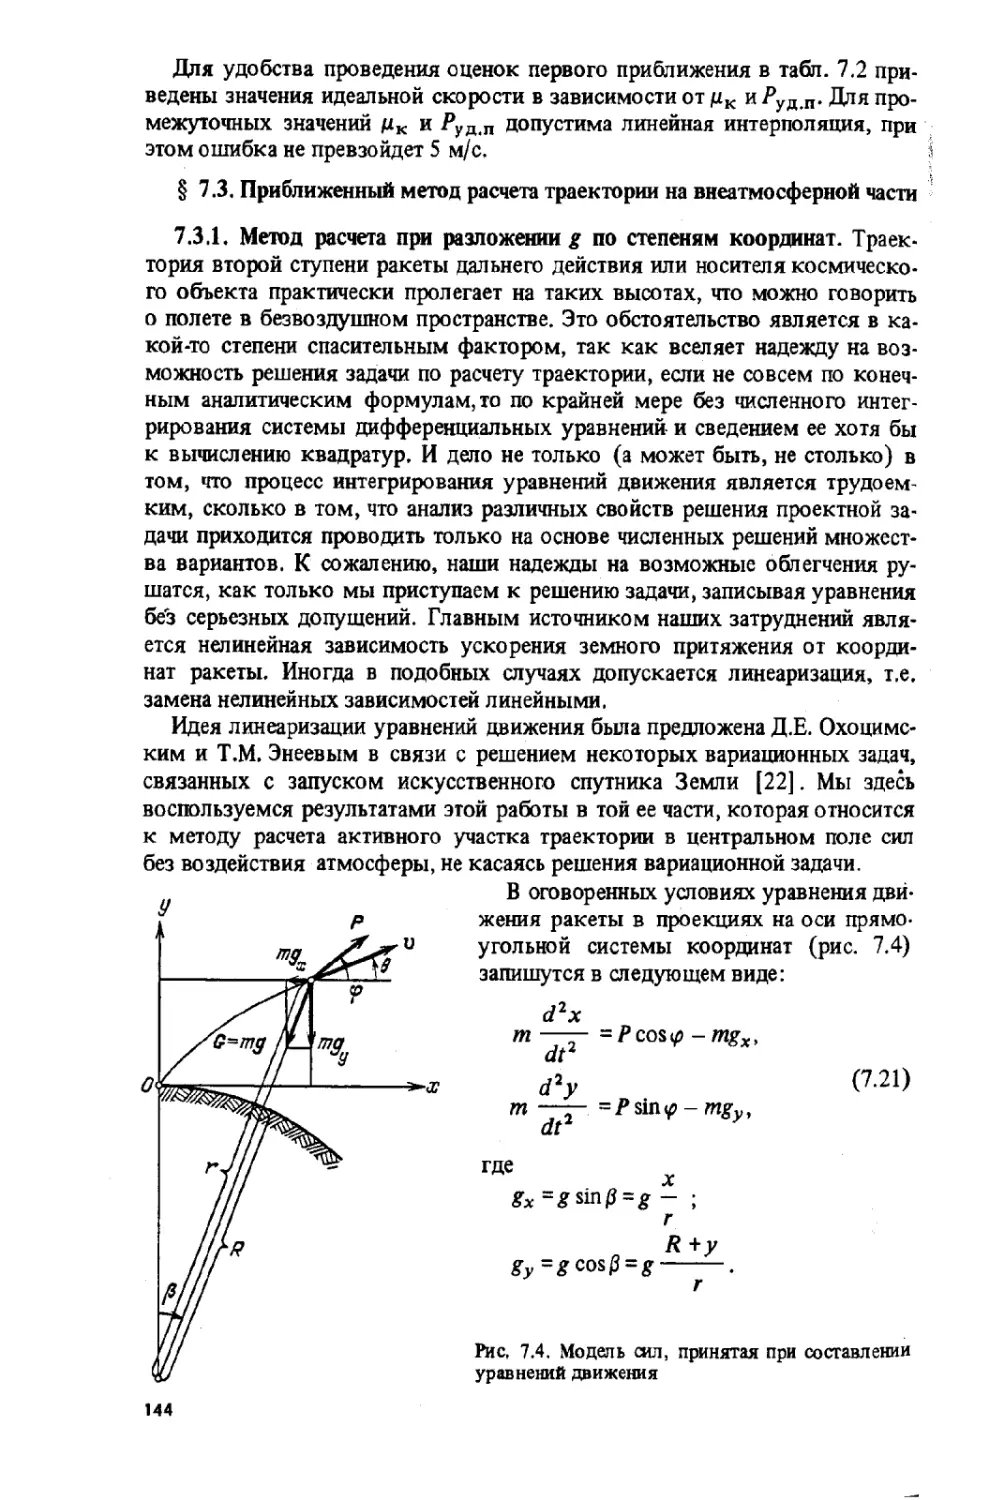 7.3.Приближенный метод расчета траектории на внеатмосферной части.